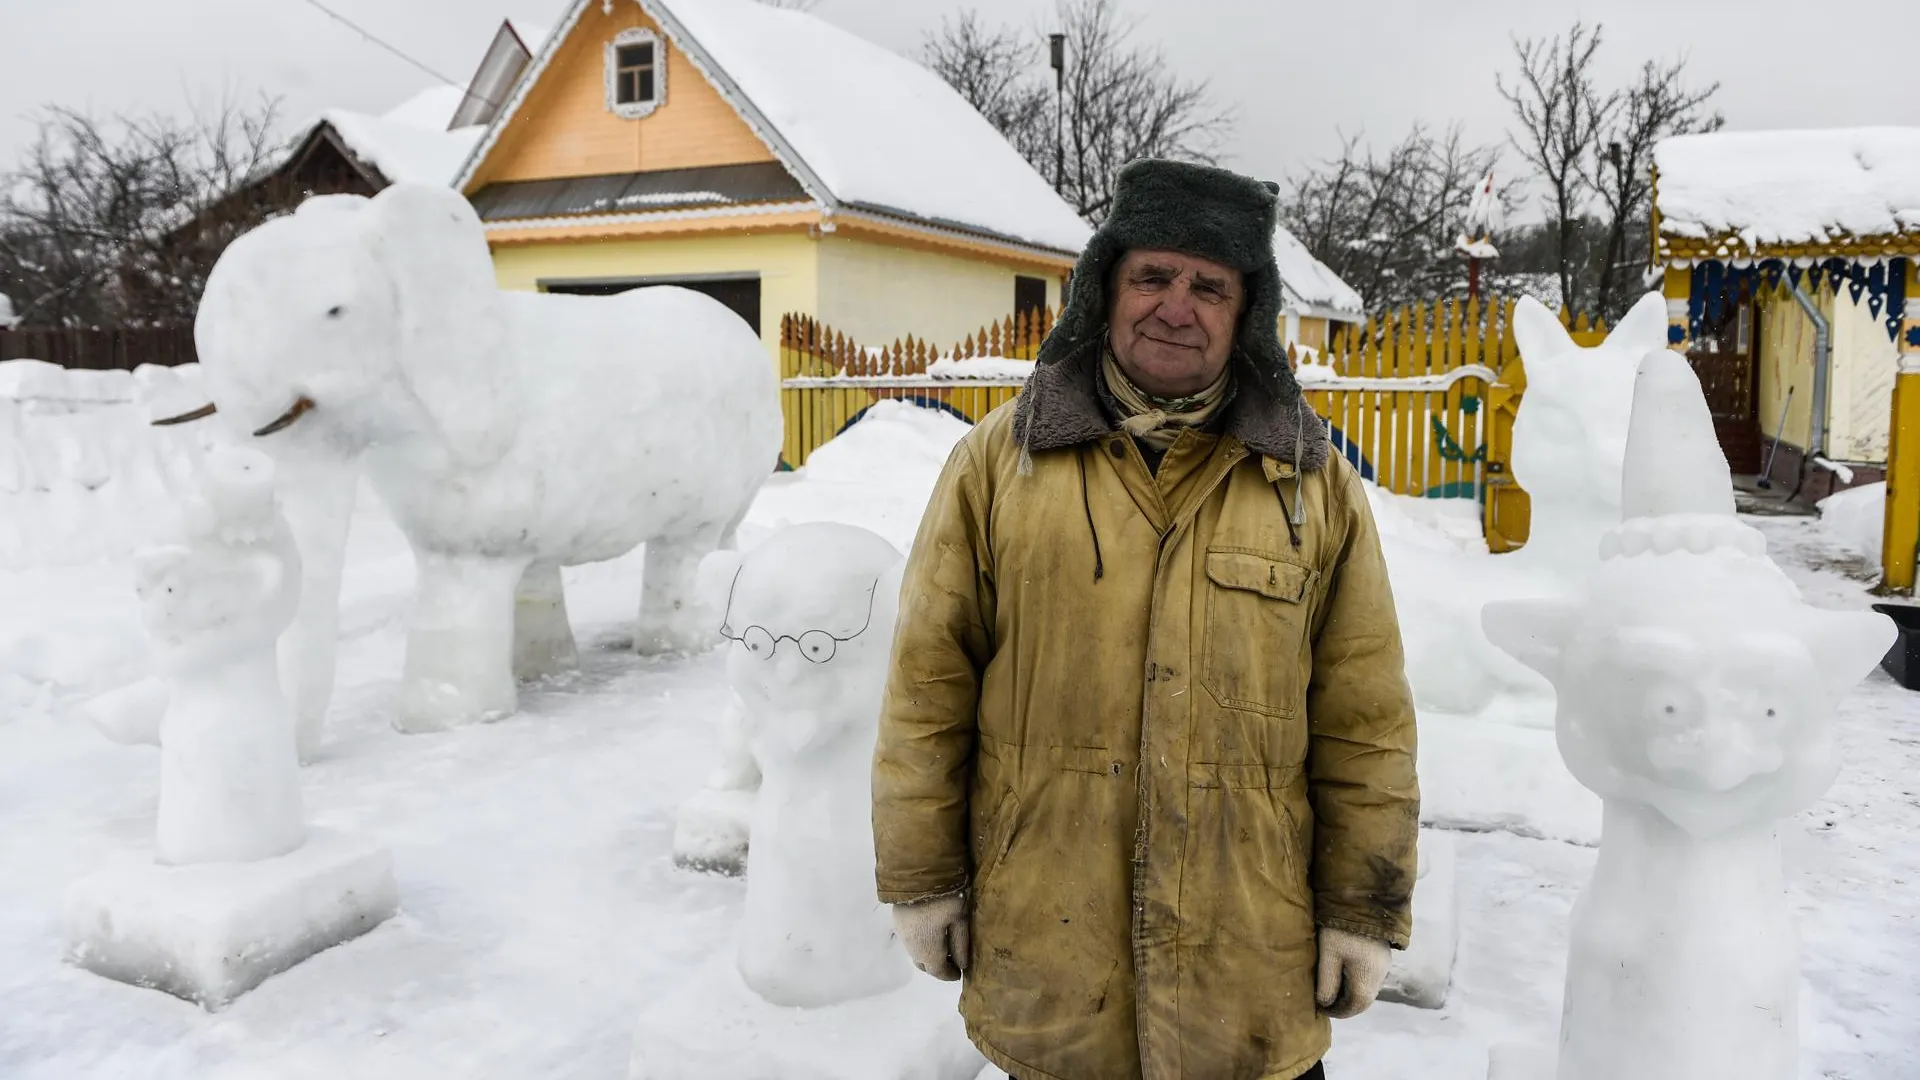 Снежный слон скульптора Евстратова: кто слепил ледяной зверинец в Подмосковье